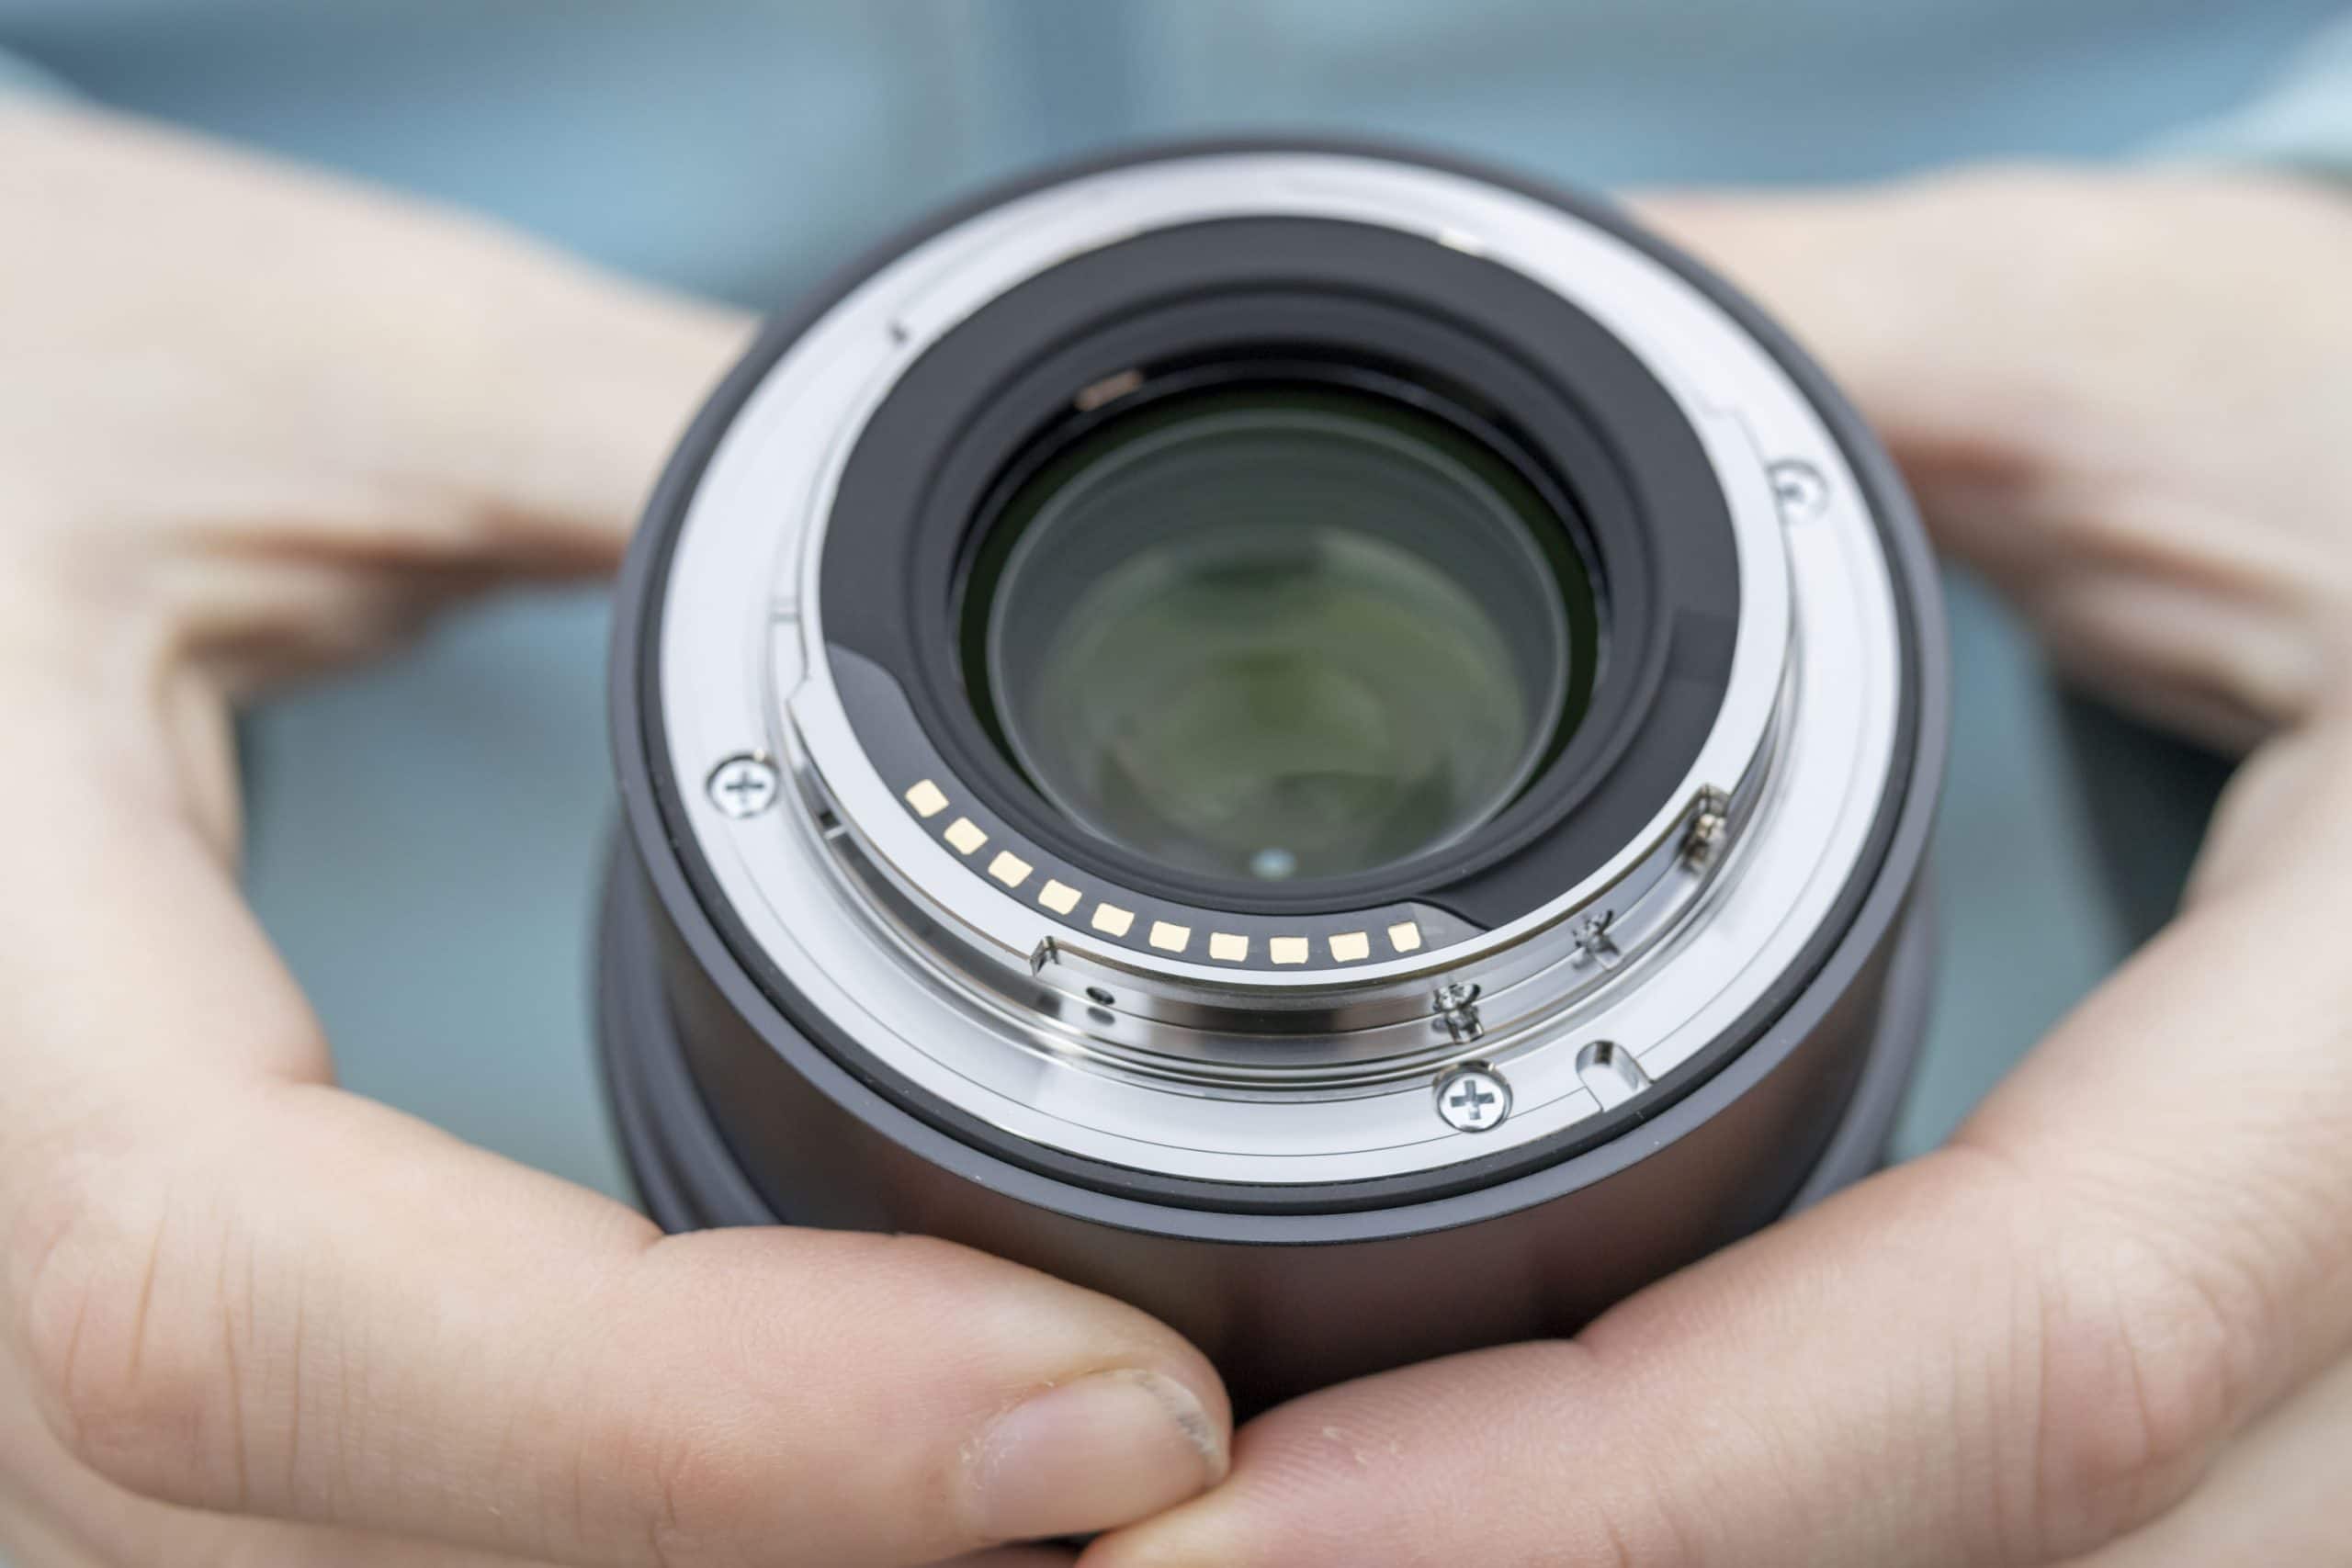 Sigma ra mắt ống kính 24mm F3.5, 35mm F2 và 65mm F2 cho ngàm E và L